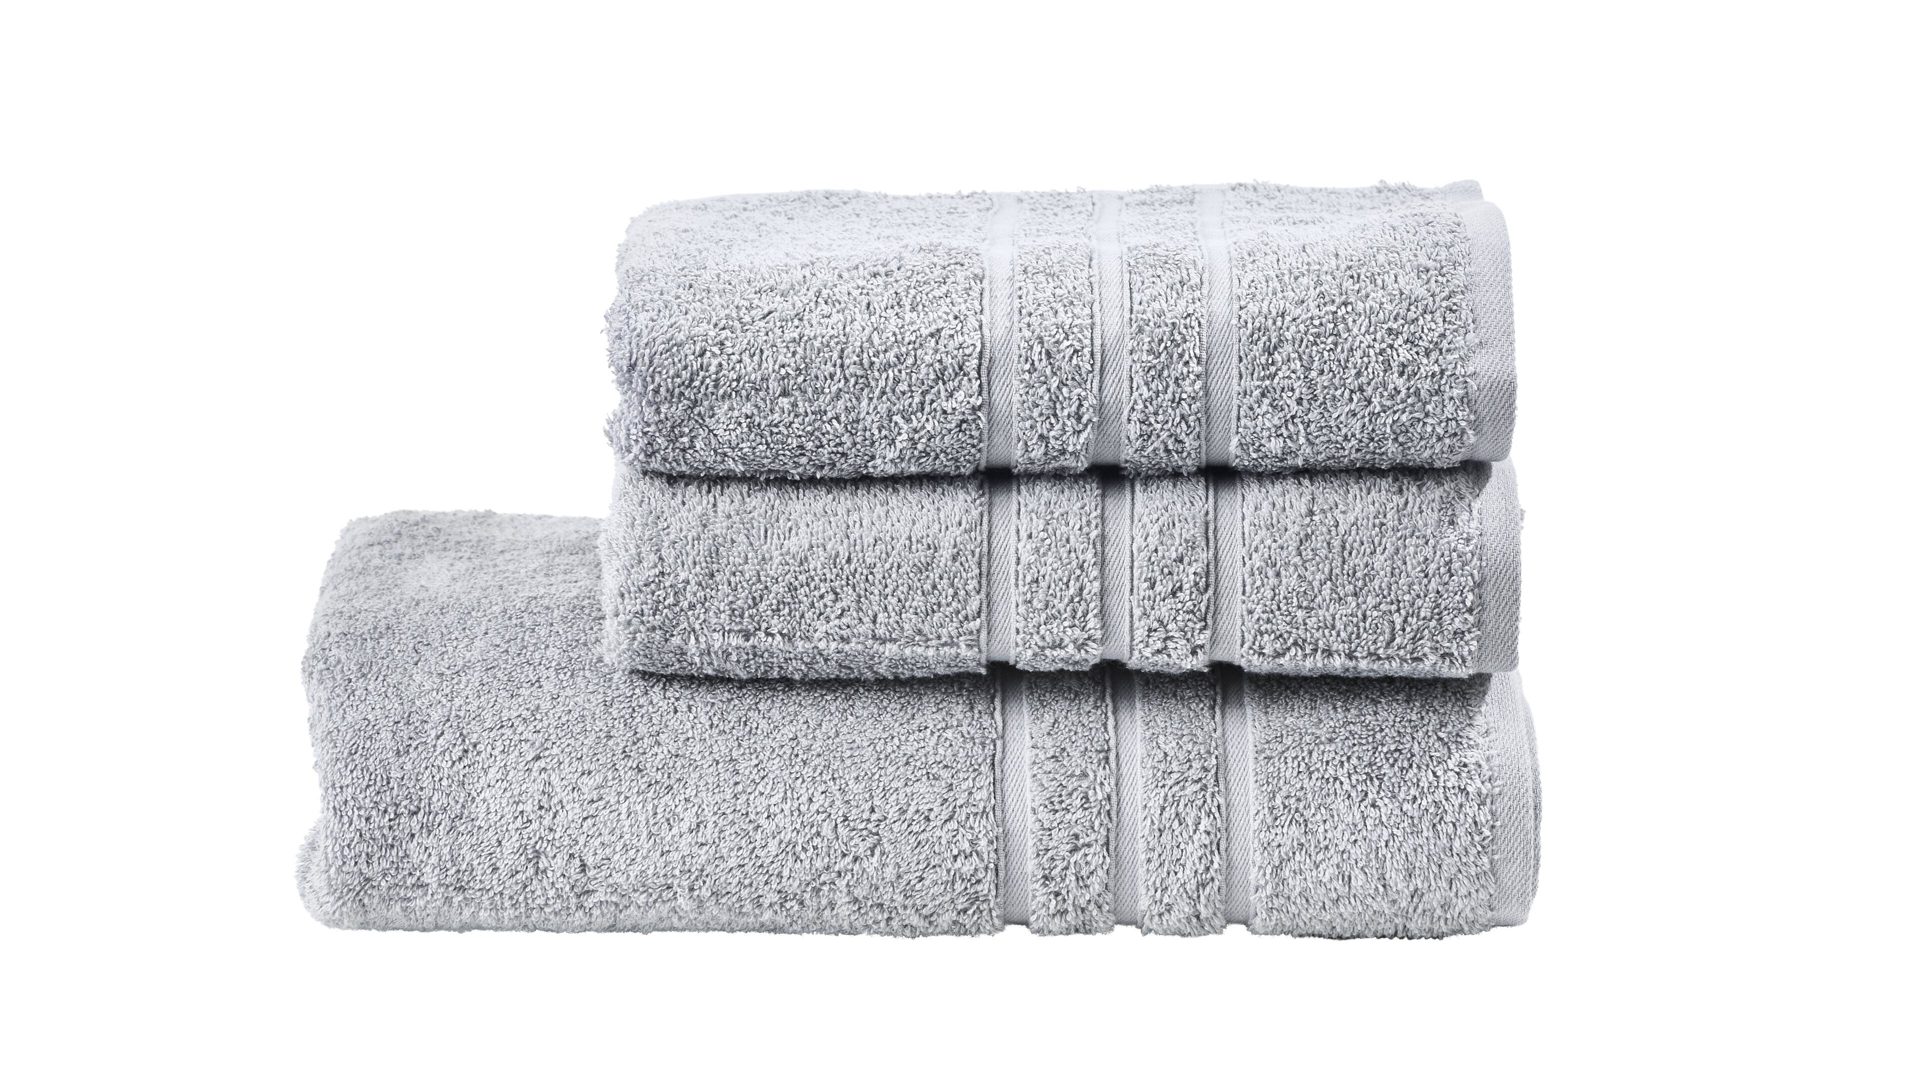 Handtuch-Set Done by karabel home company aus Stoff in Metallfarben Done Handtuch-Set Daily Uni silberfarbene Baumwolle – dreiteilig